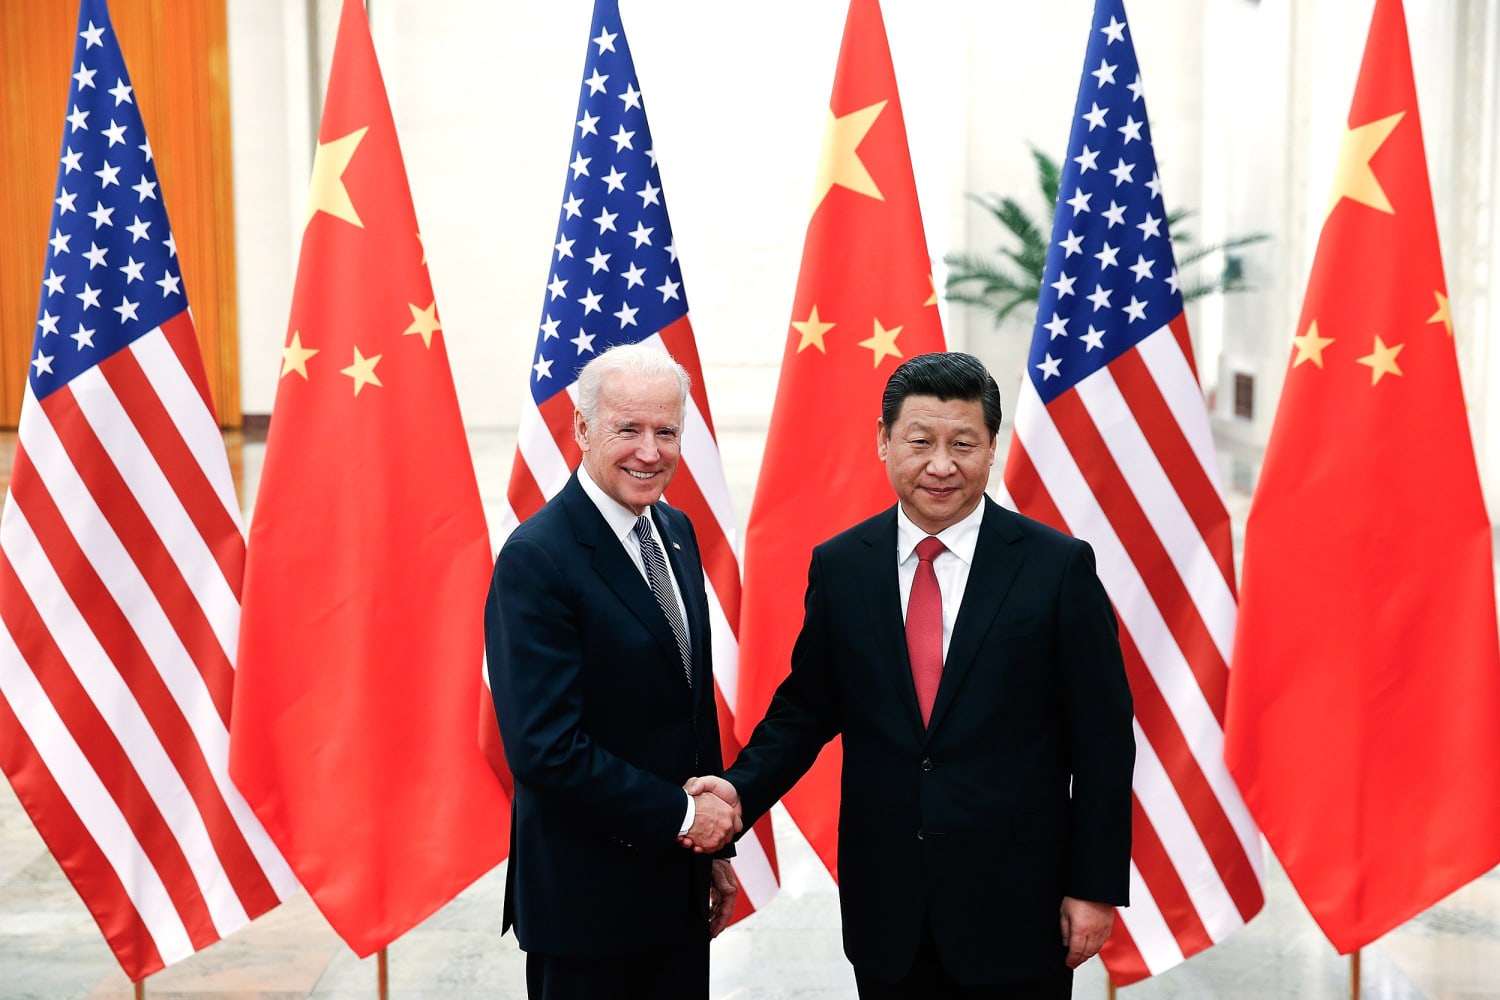 Biden, China’s Xi to meet virtually Monday